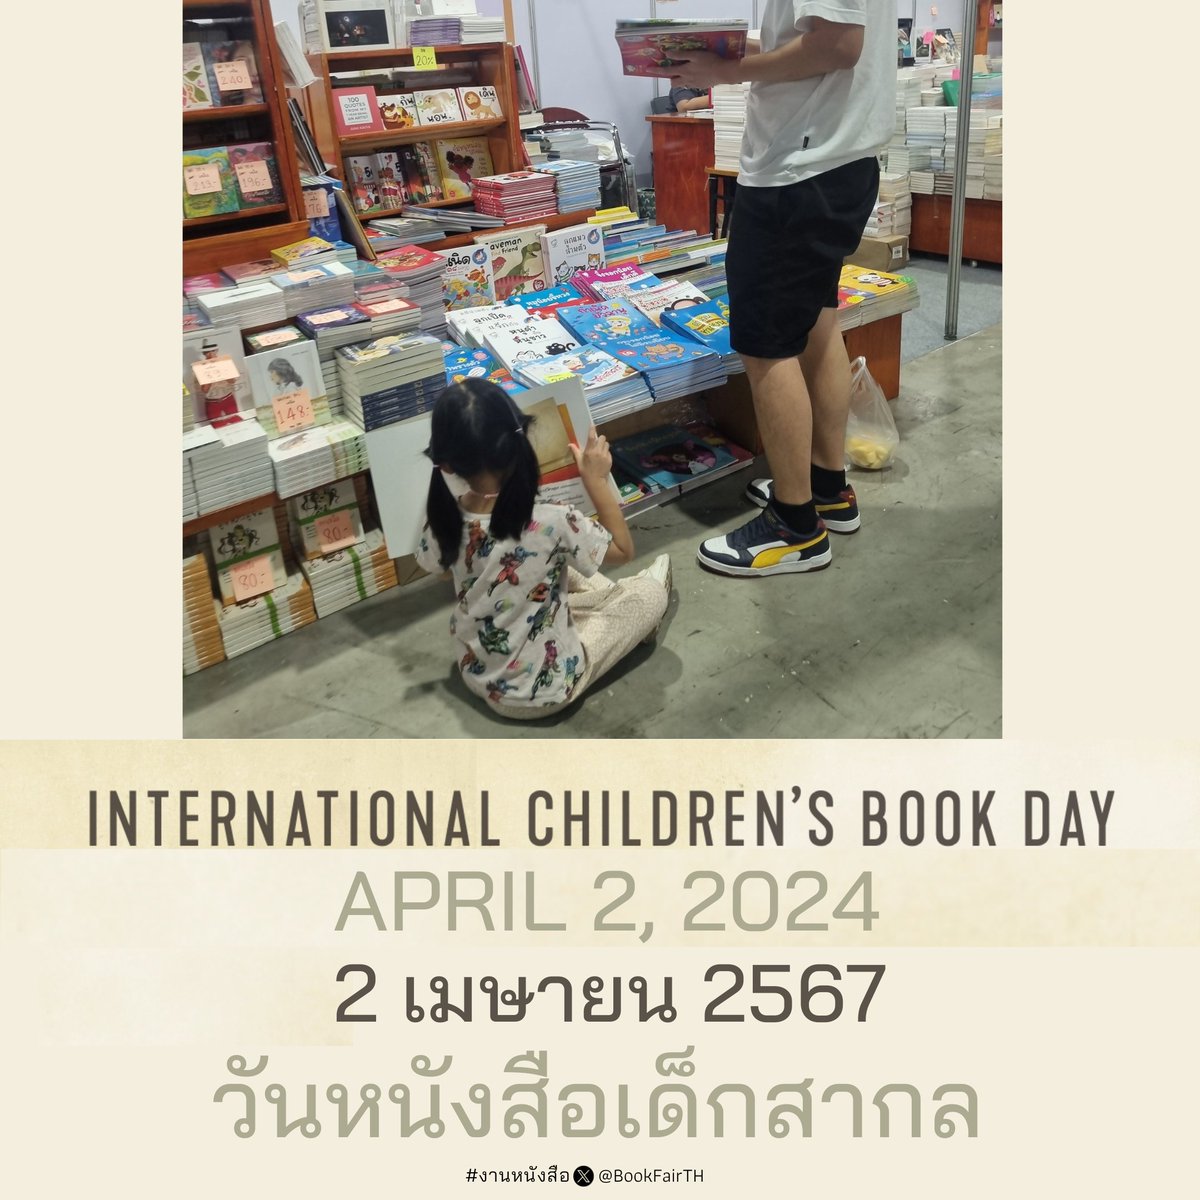 2เมษา67:เข้าสู่ 7 วันสุดท้าย!
📚#งานหนังสือ📍#ศูนย์ฯสิริกิติ์
#สัปดาห์หนังสือแห่งชาติครั้งที่52
🗓วันที่ 2เมษายนของทุกปี
=นานาชาติ
#วันหนังสือเด็กสากล #ICBD2024
#InternationalChildrensBookDay
=ประเทศไทย
#วันหนังสือเด็กแห่งชาติ
#วันรักการอ่าน
🙋‍♀️#หนังสือมีไว้ทำไม
#QSNCC #BookFairTH